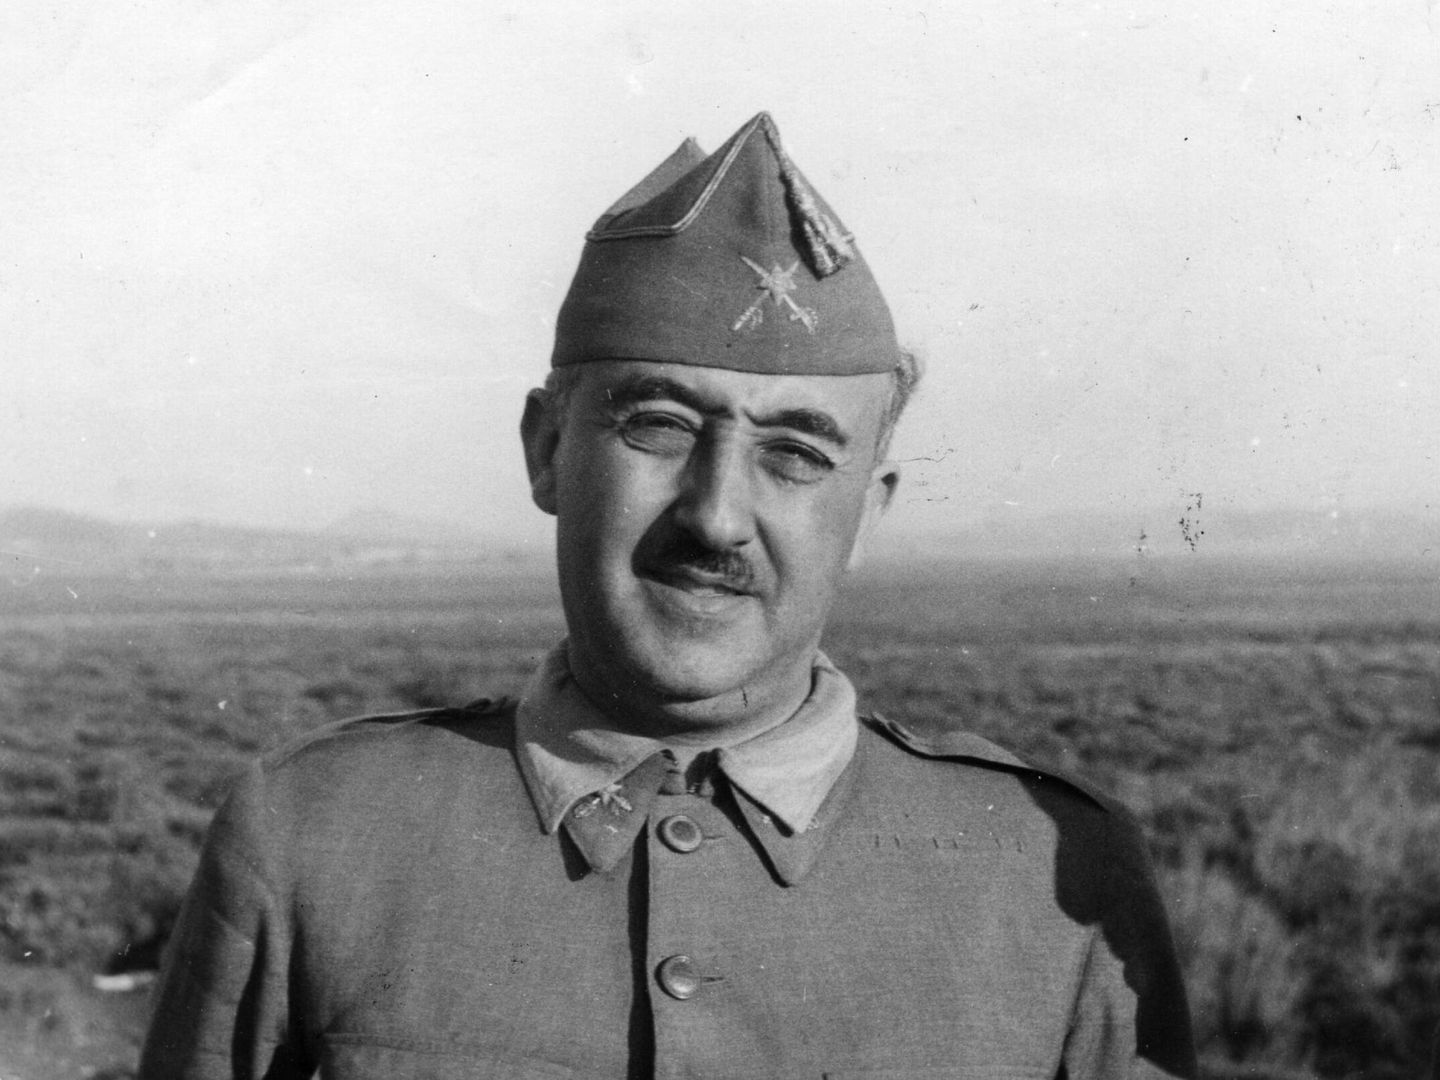 Franco, en agosto de 1937. (Hulton Archive/Getty Images)